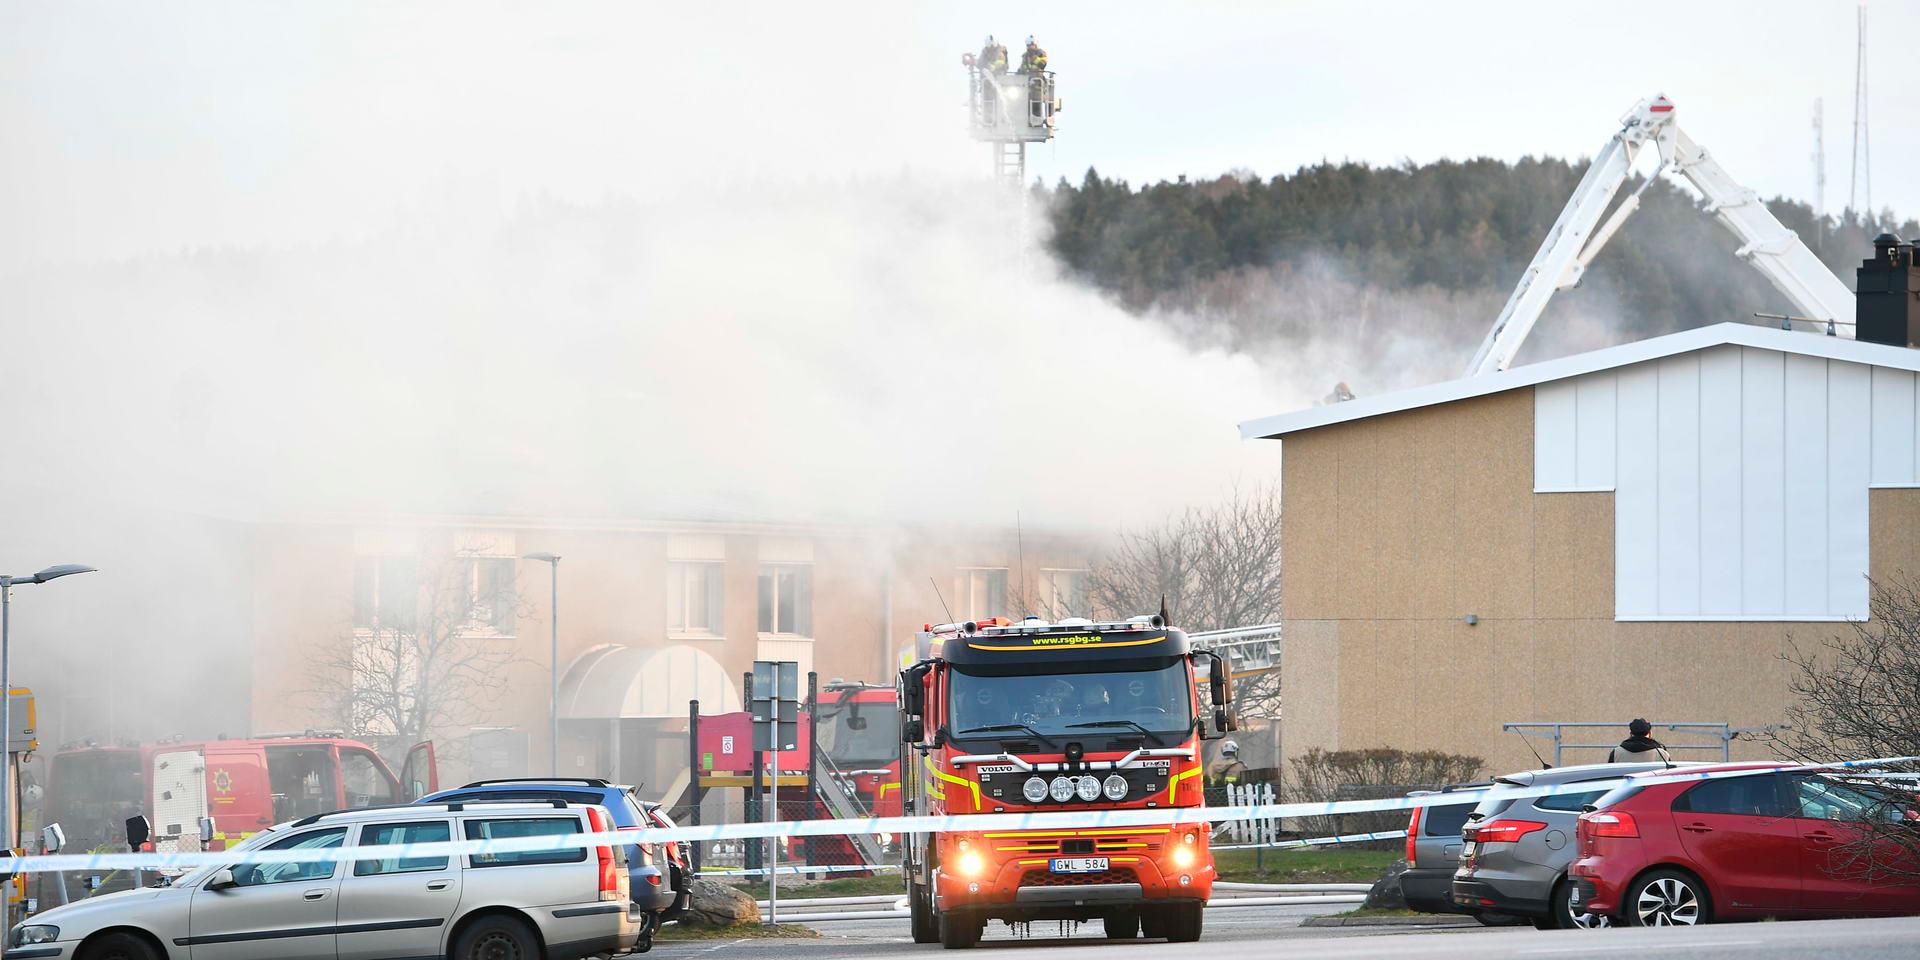 Tio poliser som assisterade räddningstjänsten vid branden i Lindome utsattes för farlig brandrök. 